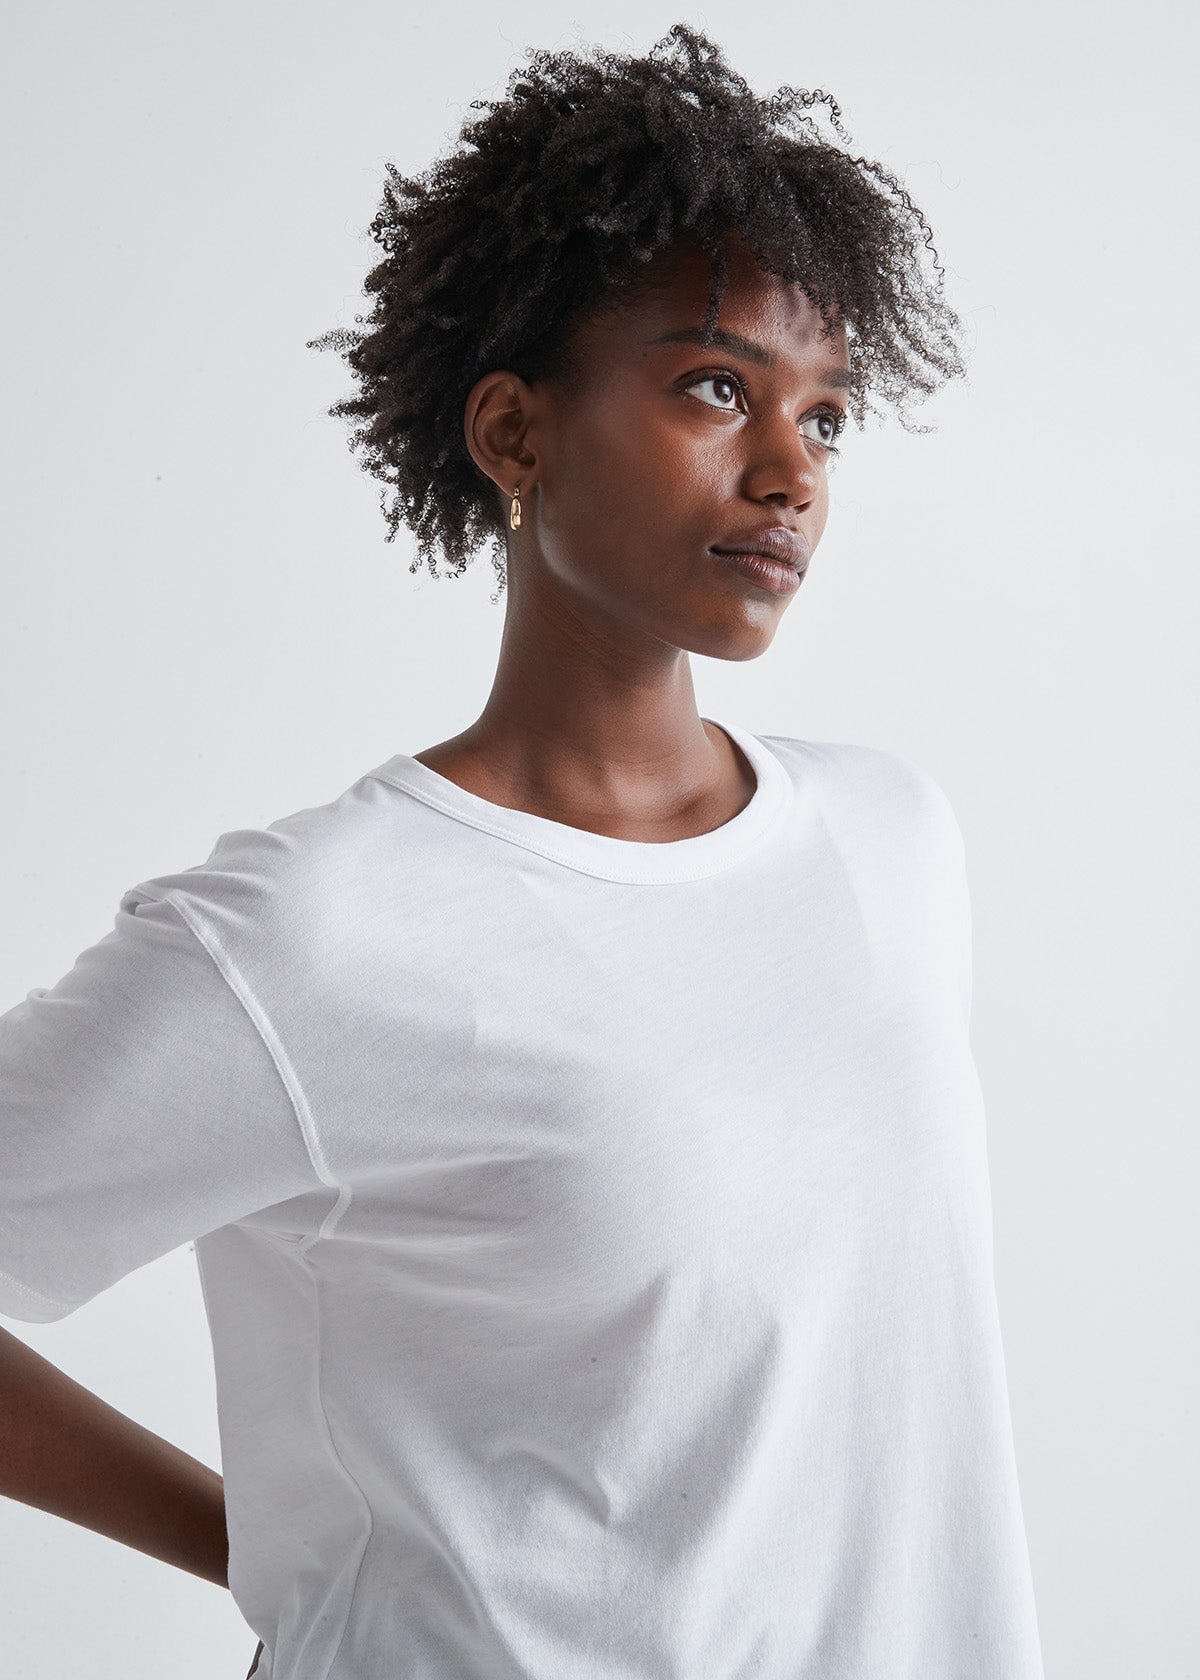 US Crop Top T Shirt Women Open Bust Short Sleeve See Through Yes